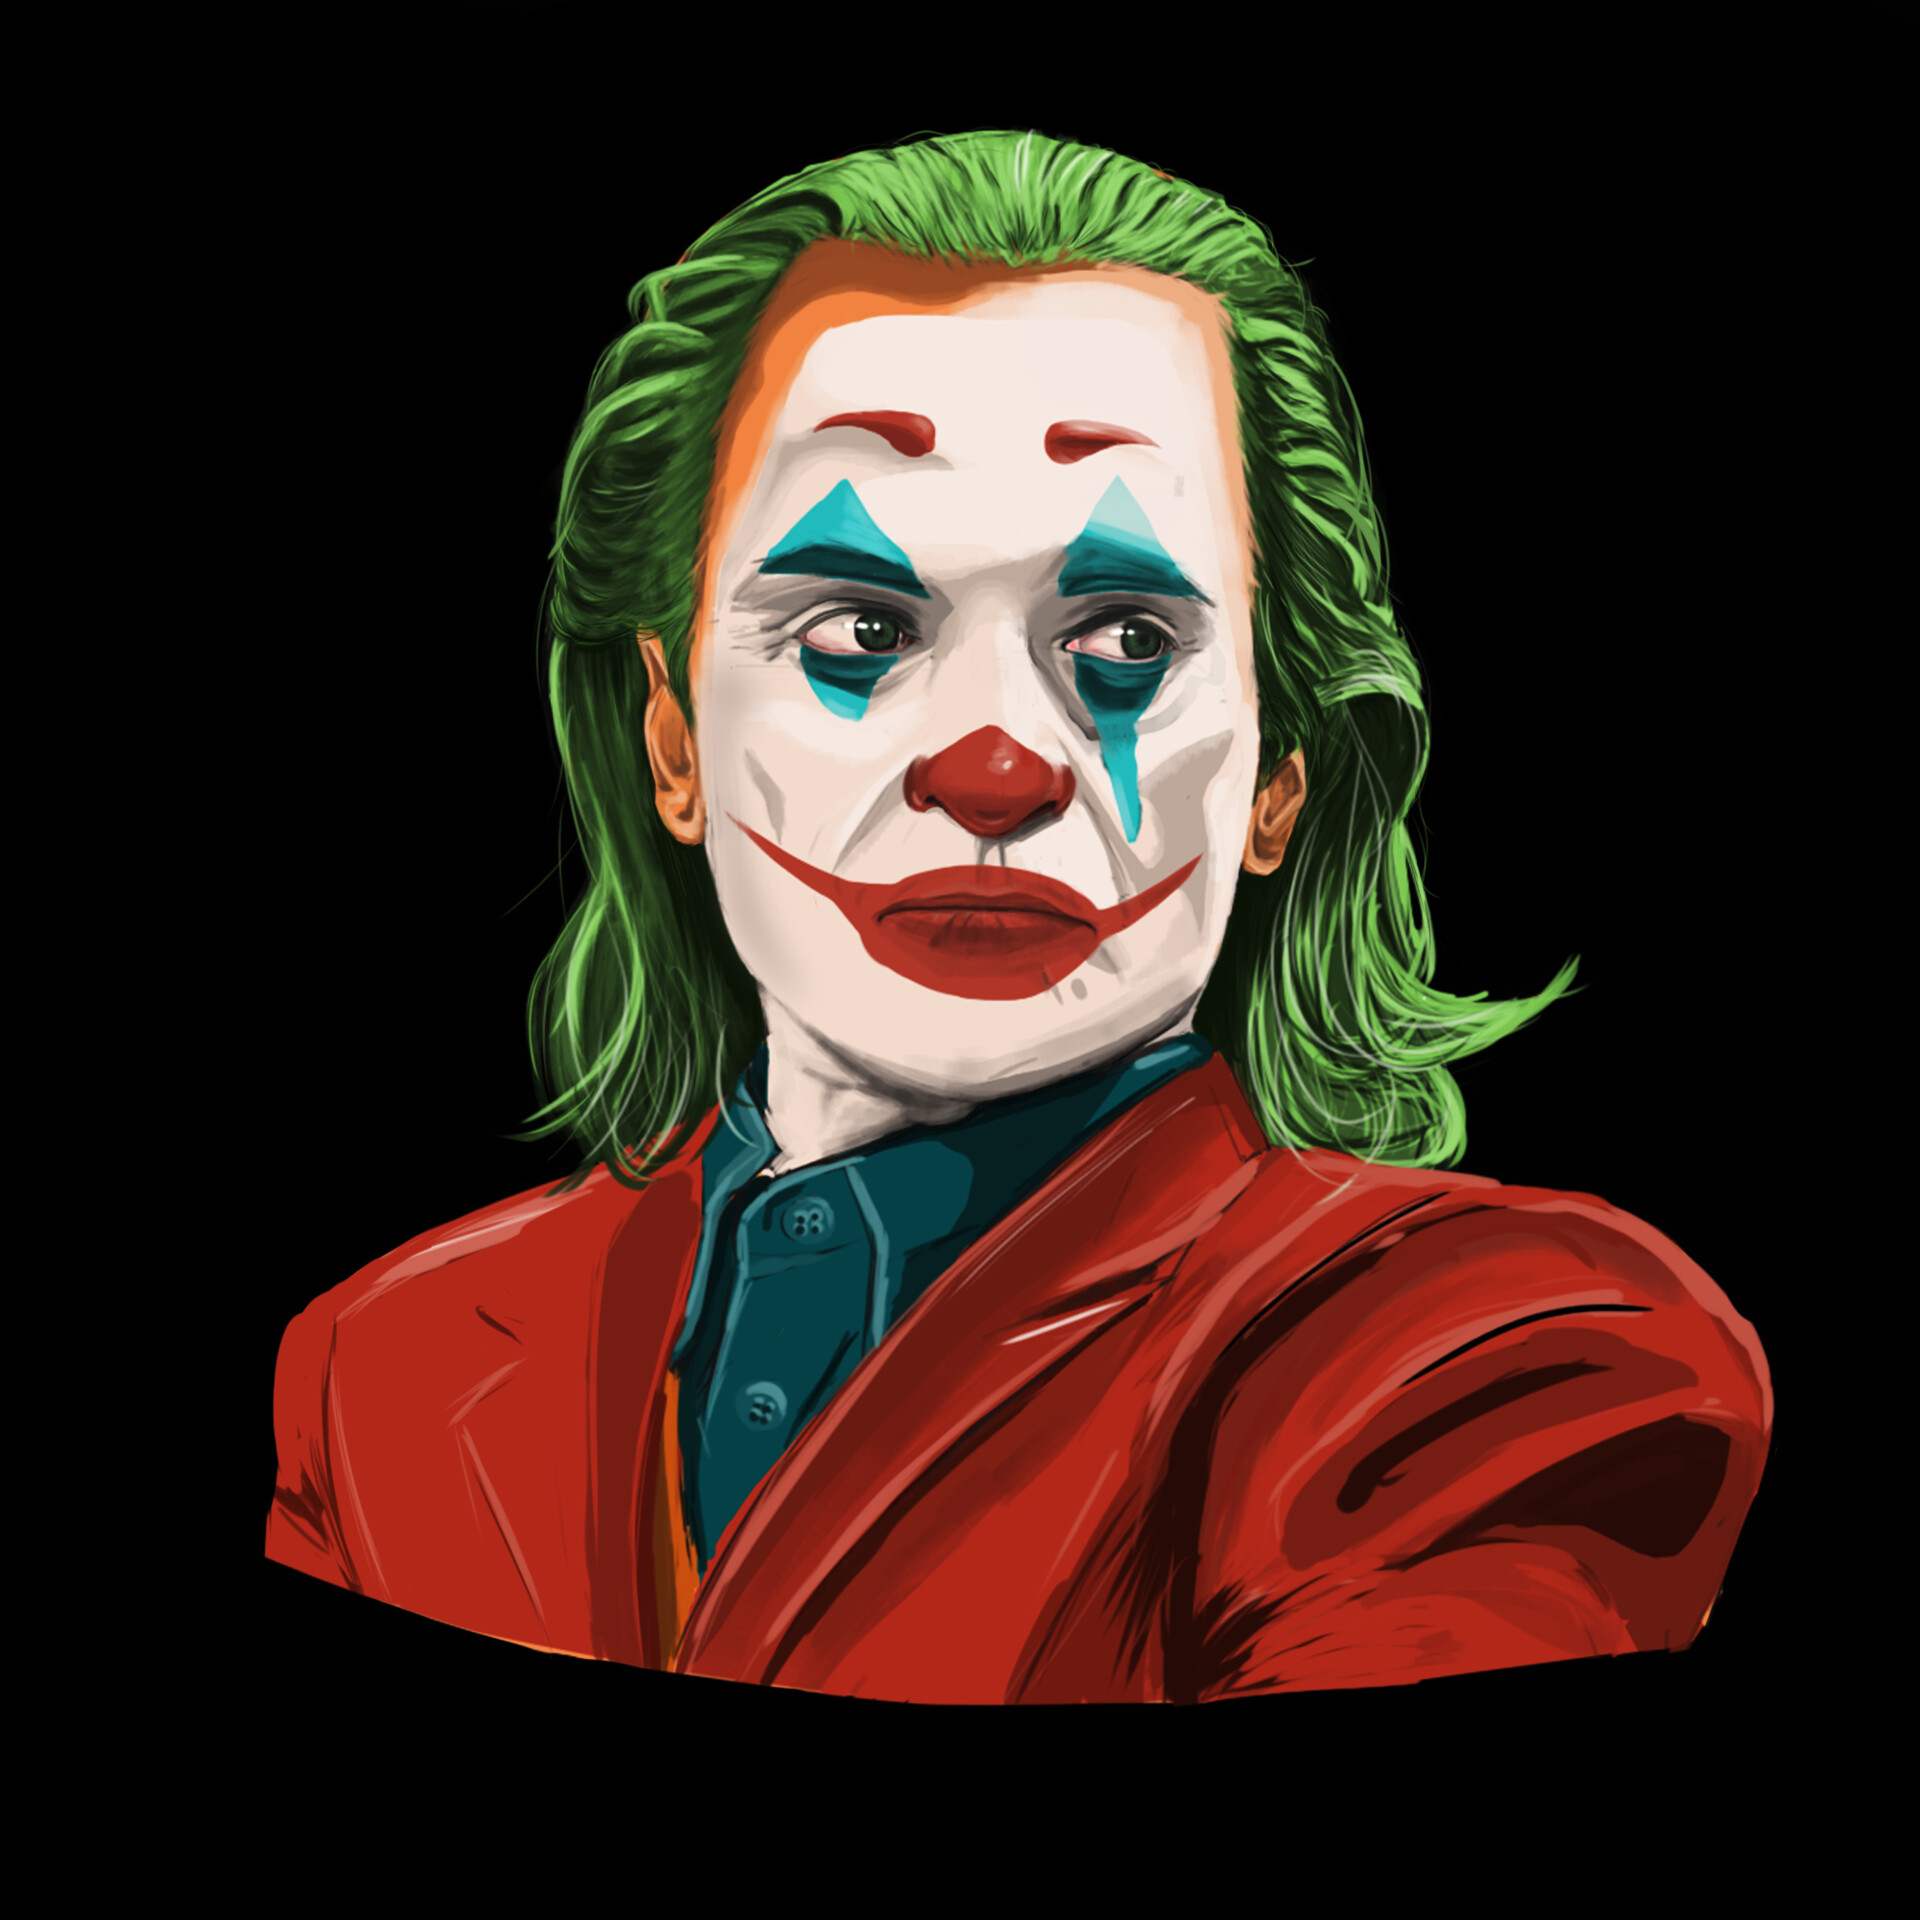 ArtStation - Joker artwork